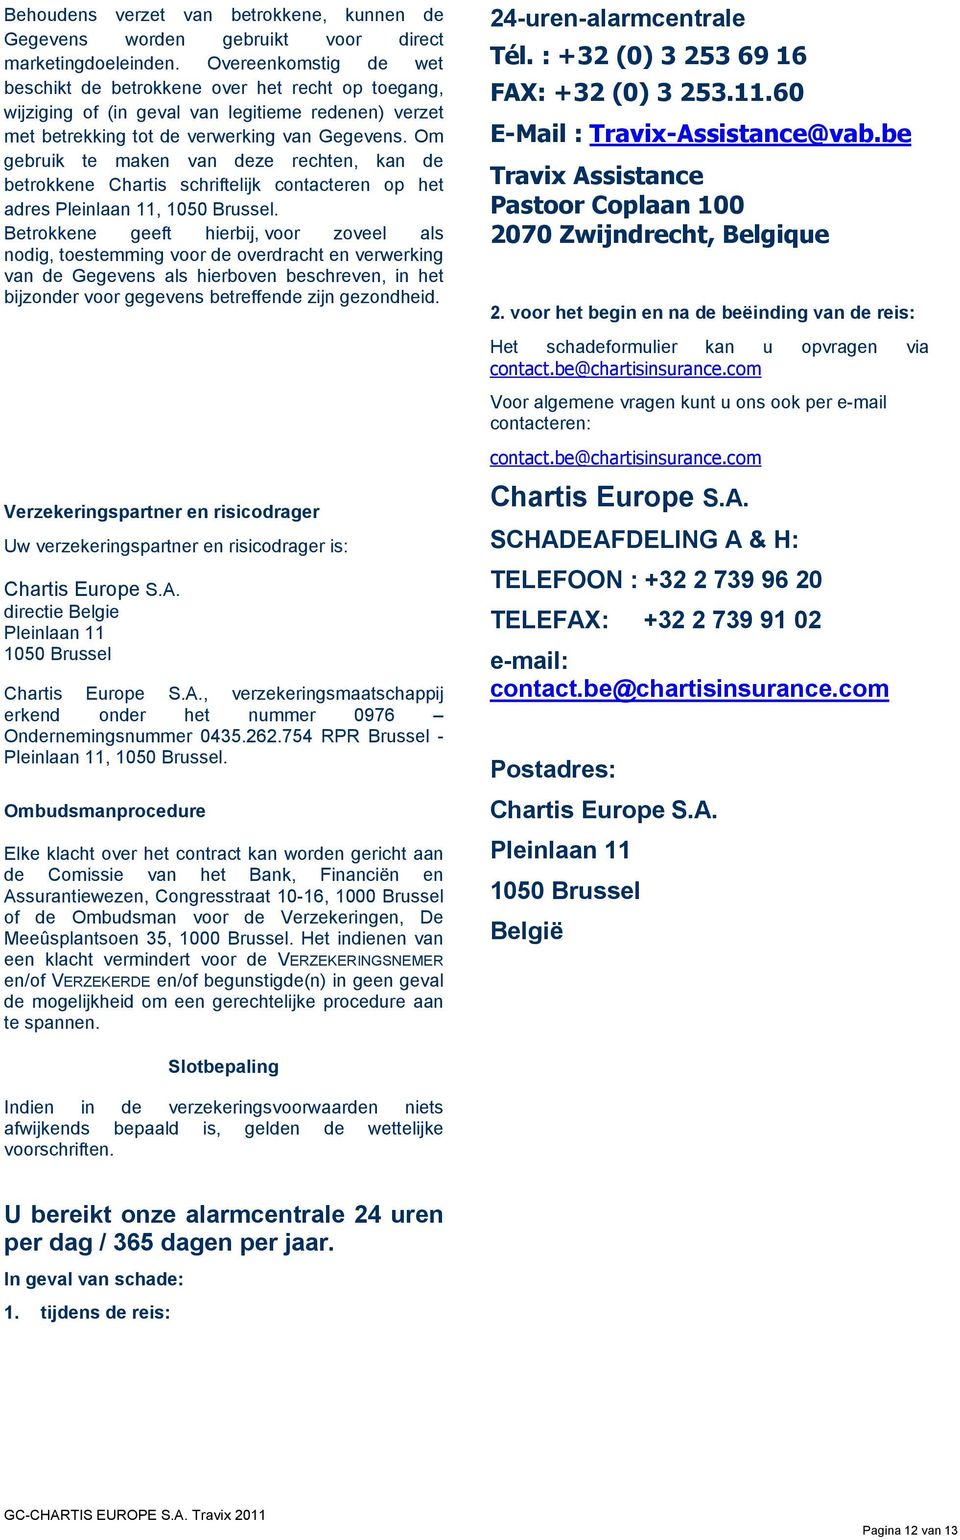 Om gebruik te maken van deze rechten, kan de betrokkene Chartis schriftelijk contacteren op het adres Pleinlaan 11, 1050 Brussel.